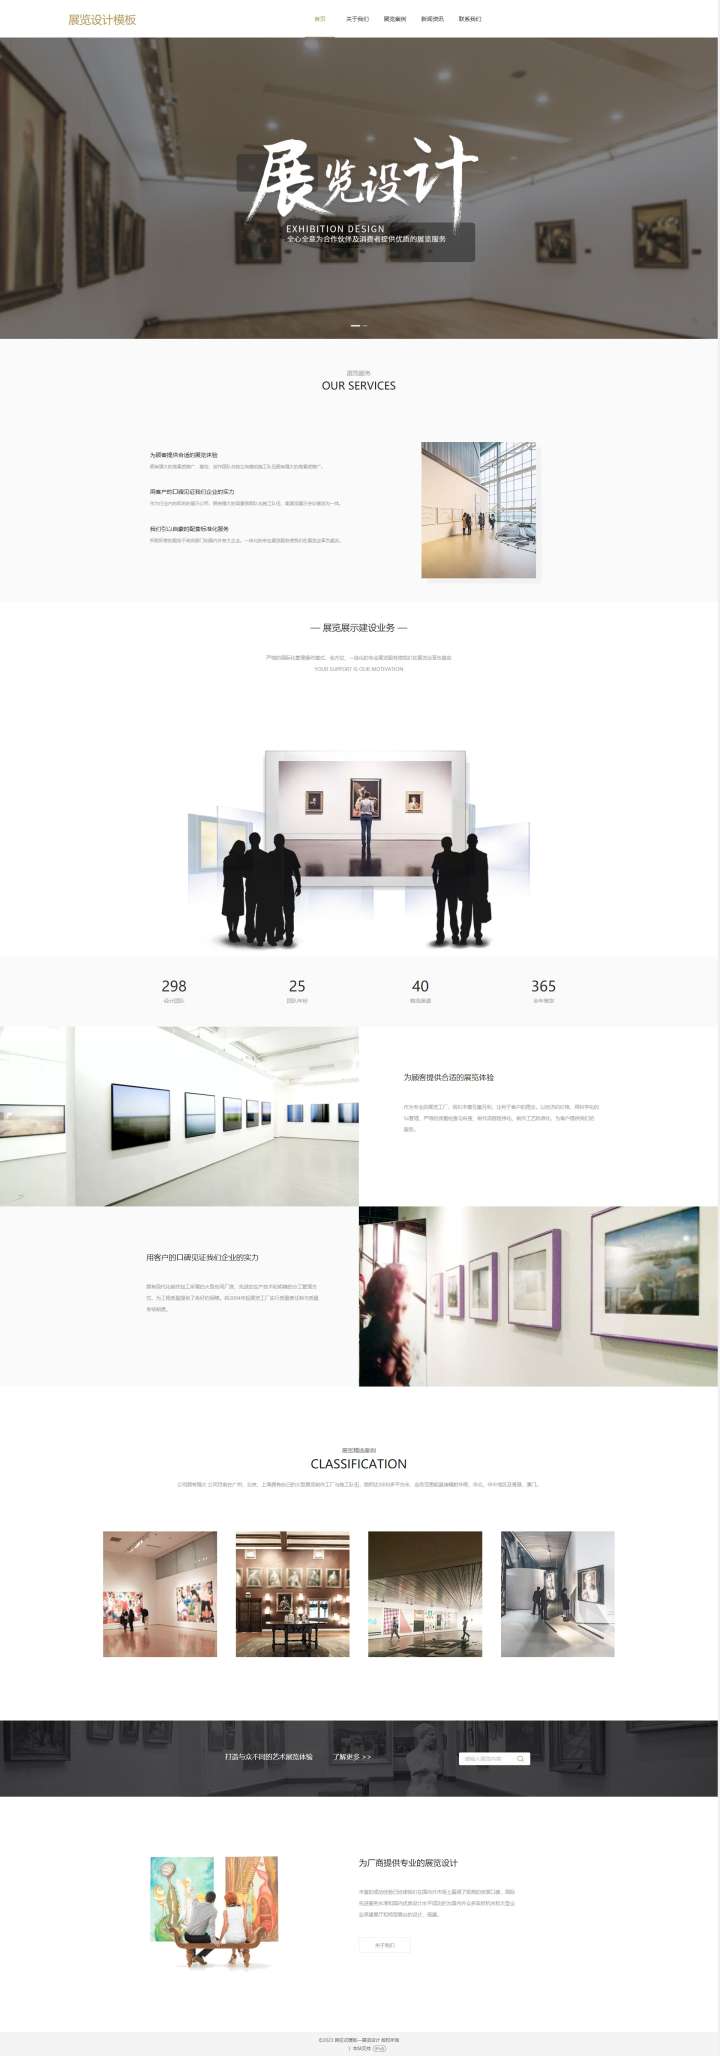 精选艺术展览设计网站模板